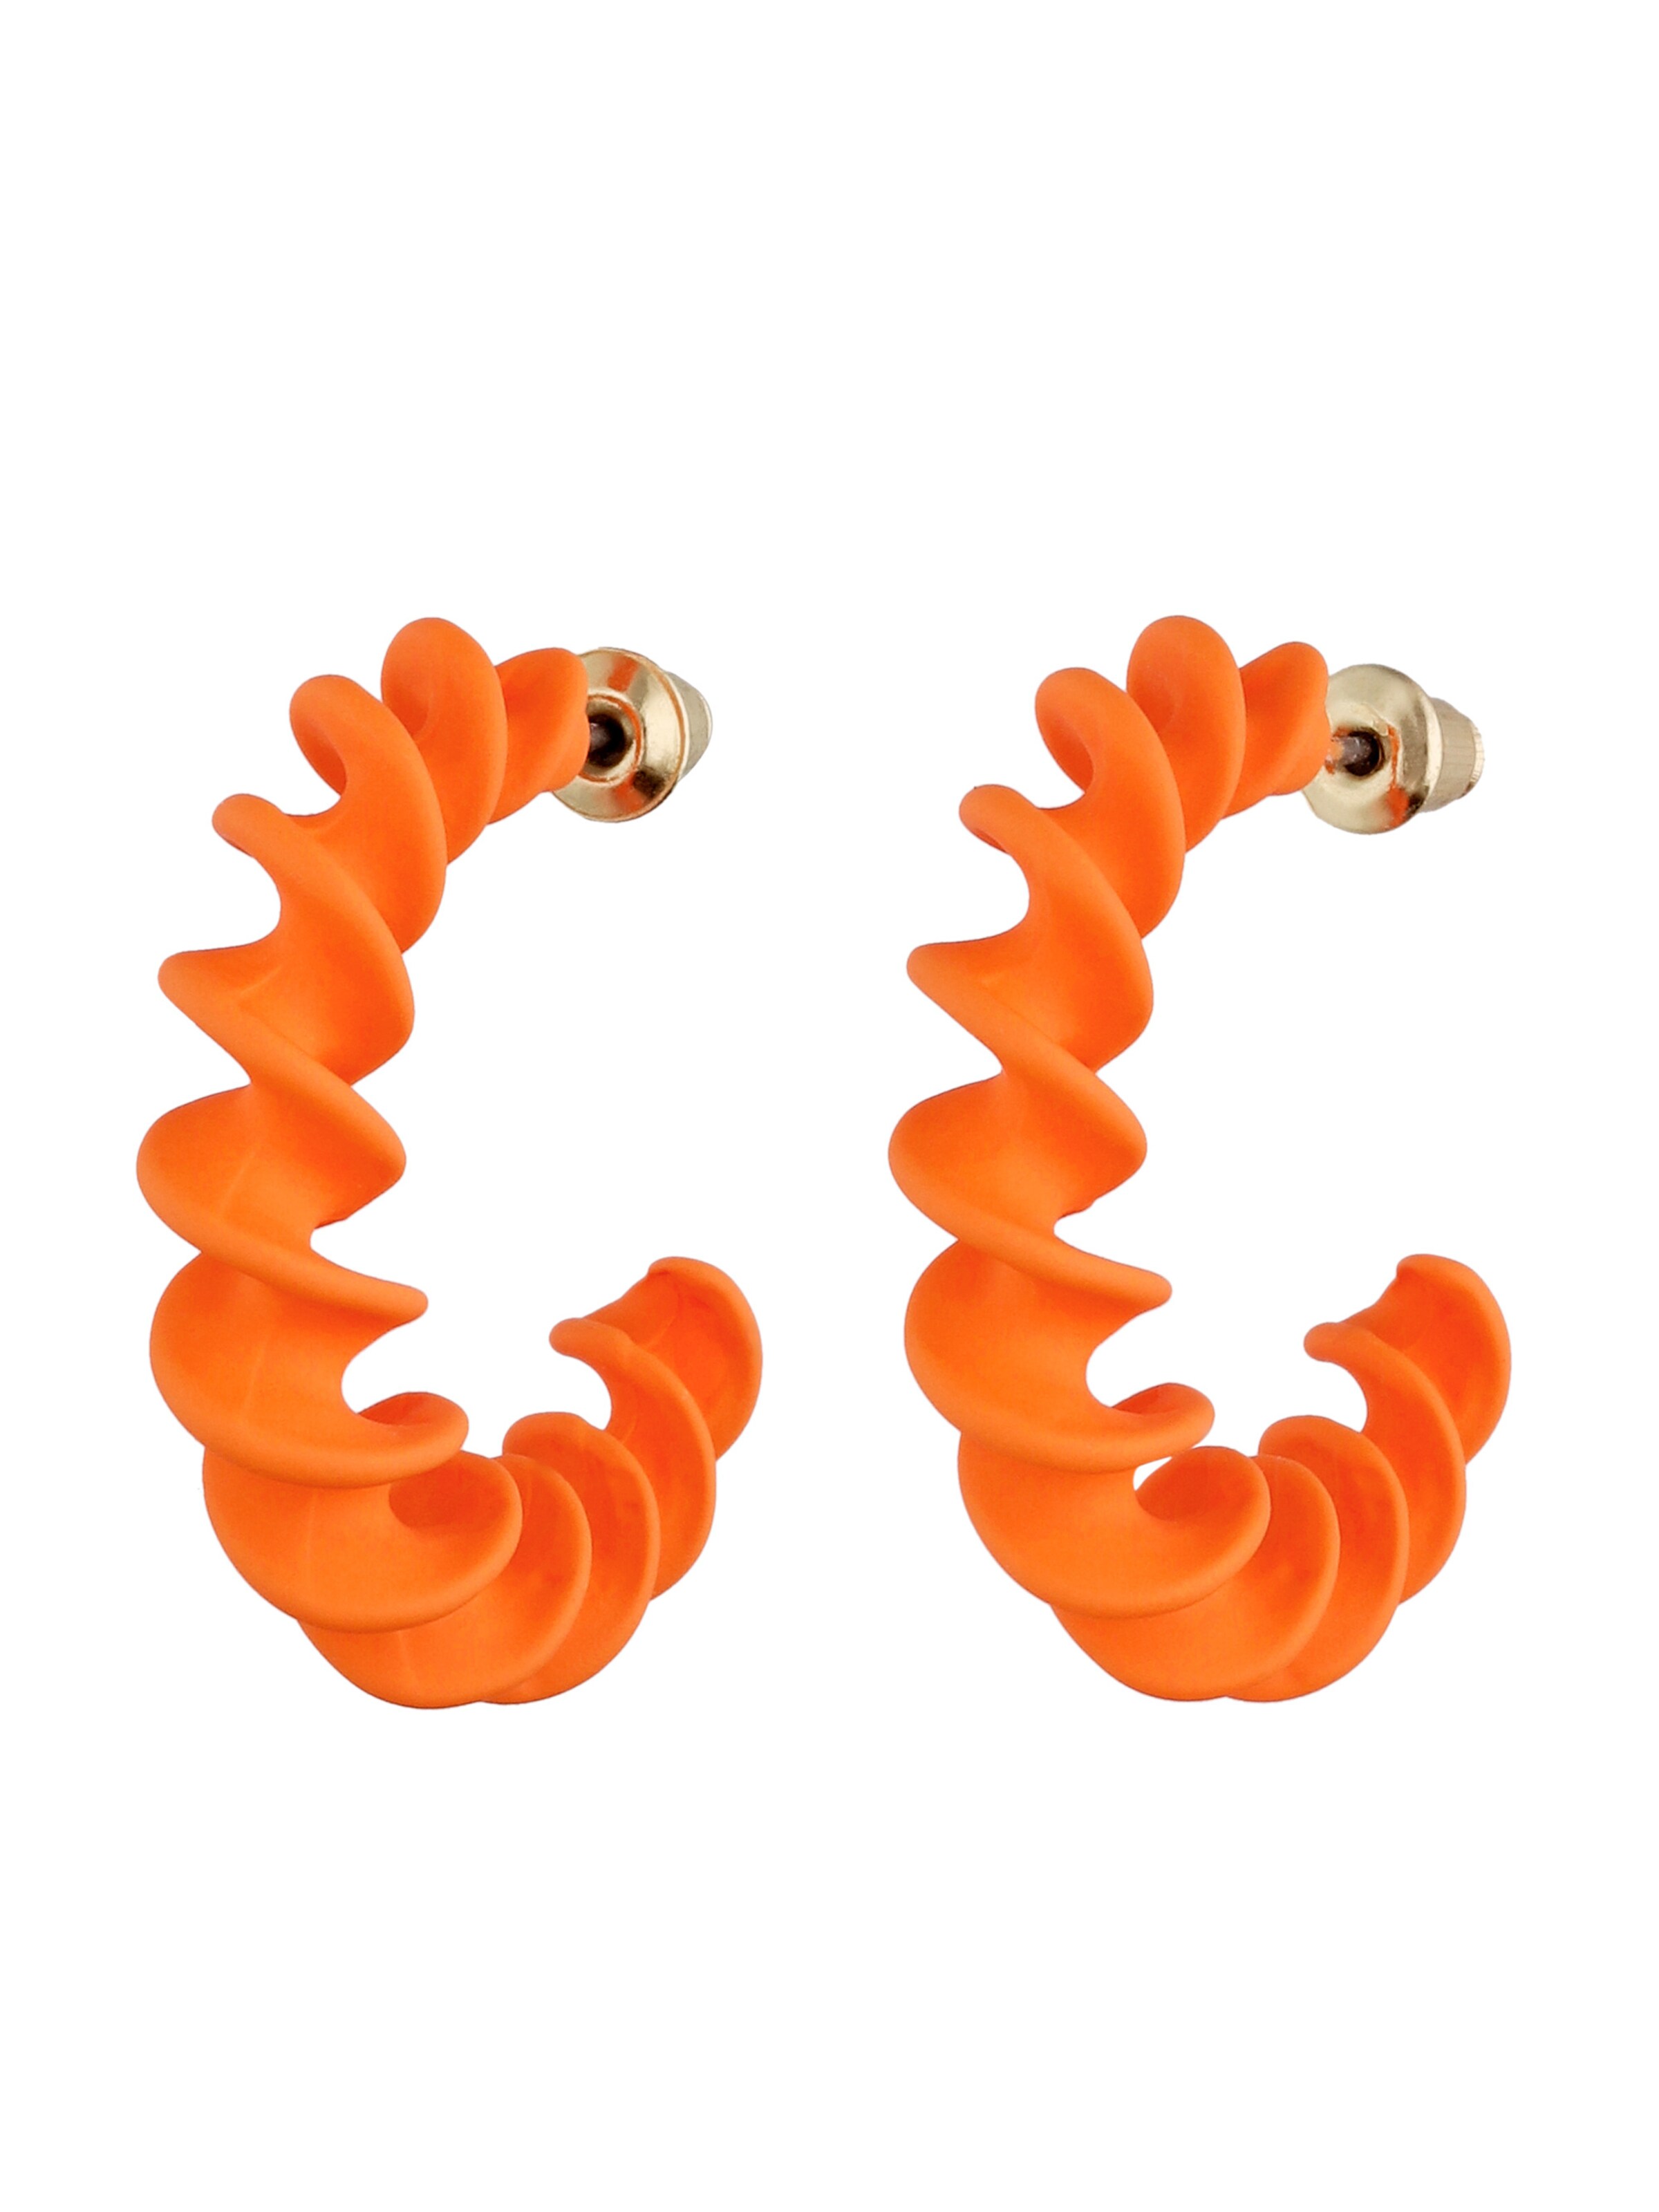 Rabatt 72 % DAMEN Accessoires Modeschmuckset Orange Orange Einheitlich NoName Orange Halsketten eingestellt 